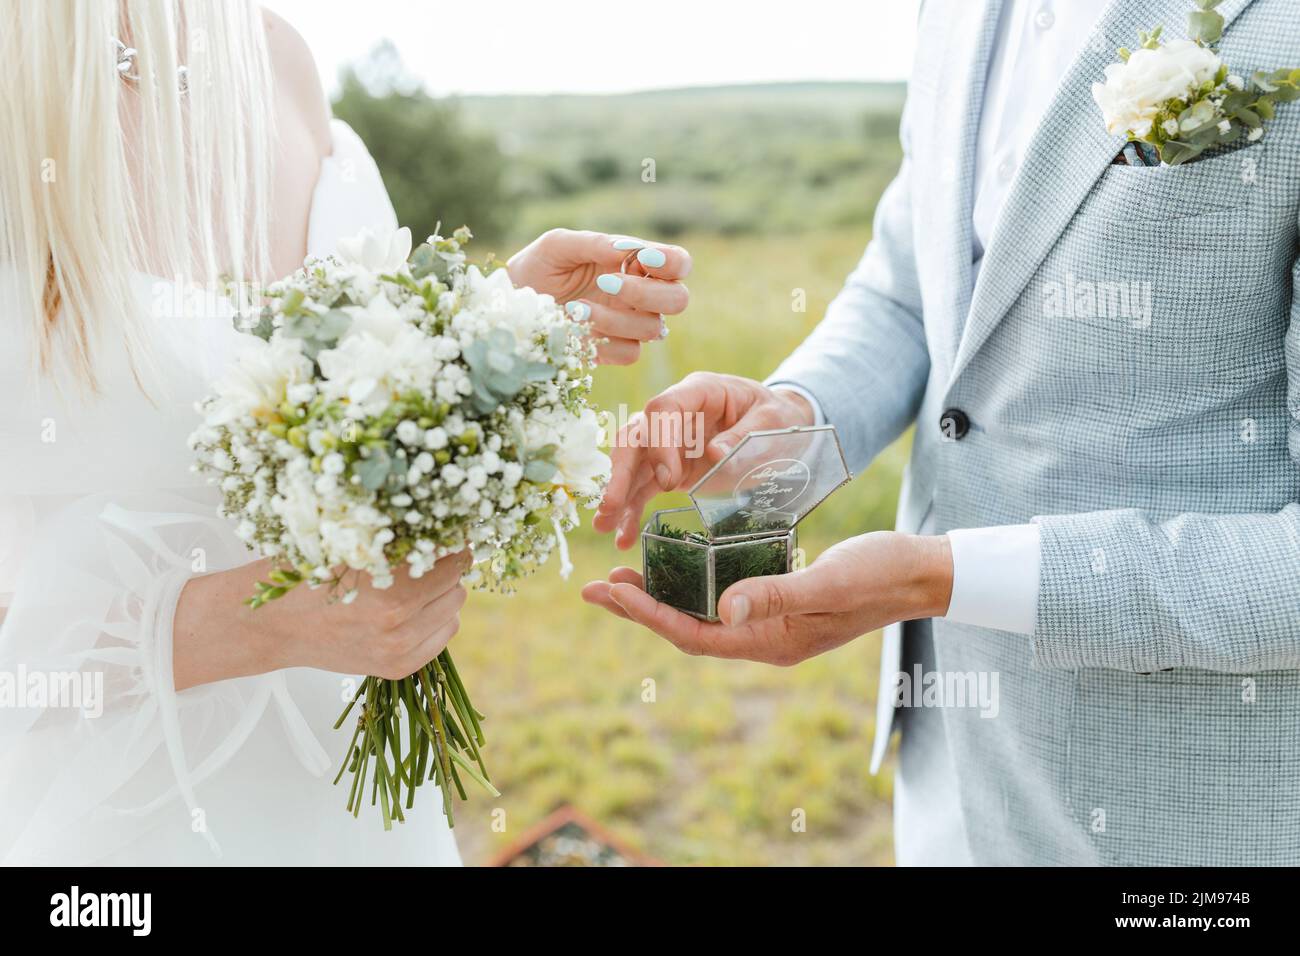 Nahaufnahme der Braut, die ihre Hand dem Bräutigam gibt, um ihren Ring während der Hochzeitszeremonie anzuziehen. Verheiratetes Leben und glückliches Familienkonzept. Stockfoto